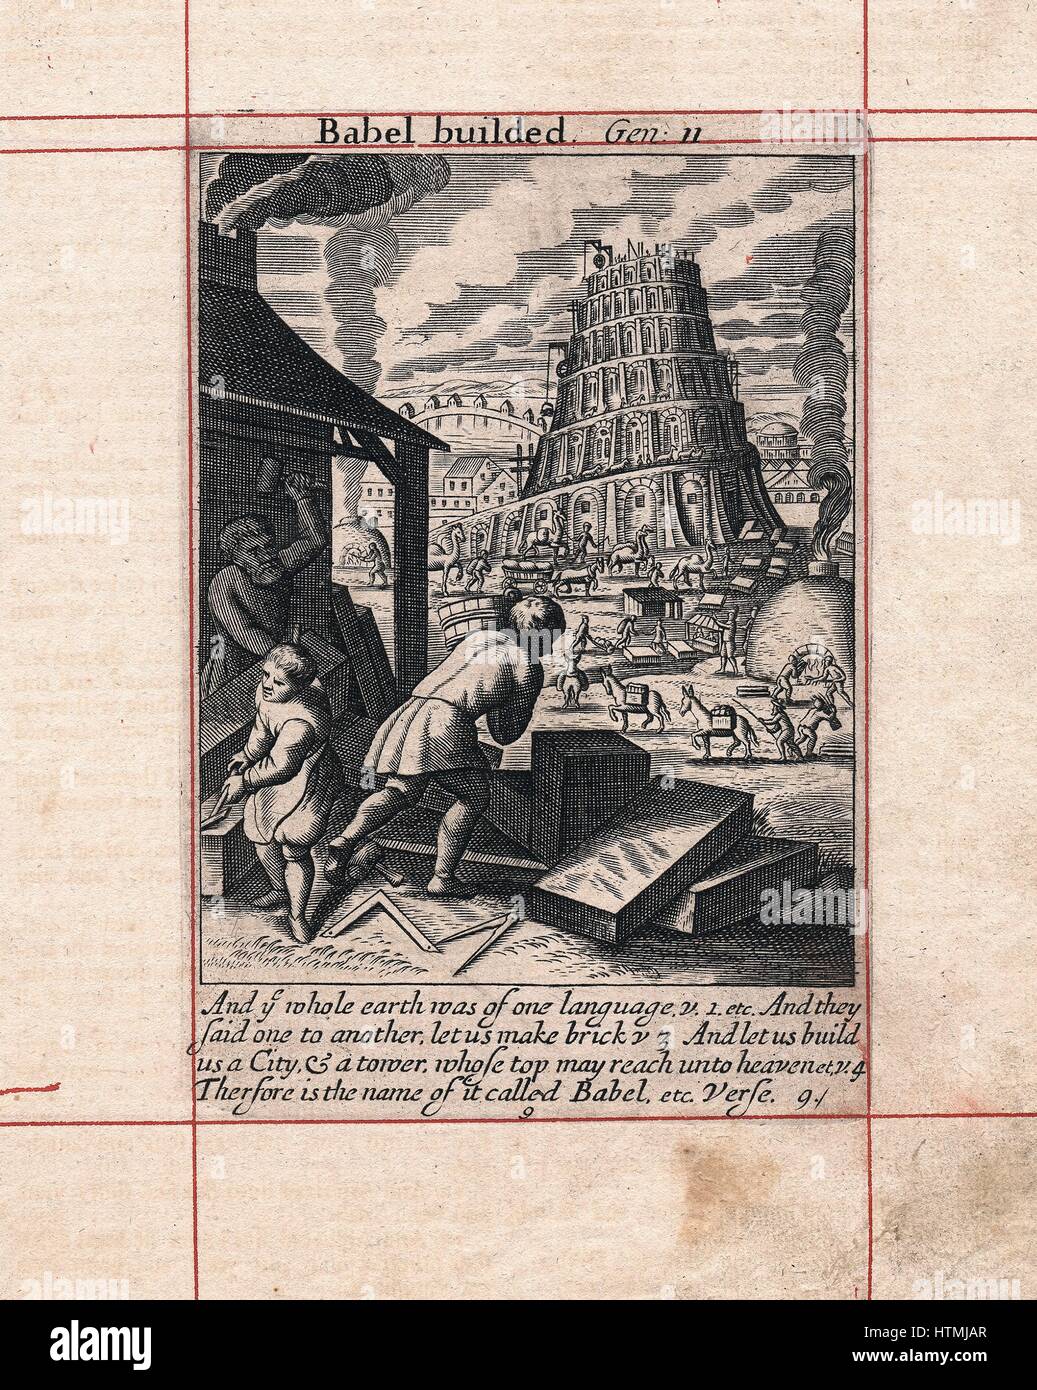 Gebäude der Turmbau zu Babel. Bibel: Genesis 2. Ziegel gebrannt in vor-Ort-Öfen, im Vordergrund Maurer sind Arbeiten Steinblöcke. Kupferstich von 1716 Stockfoto